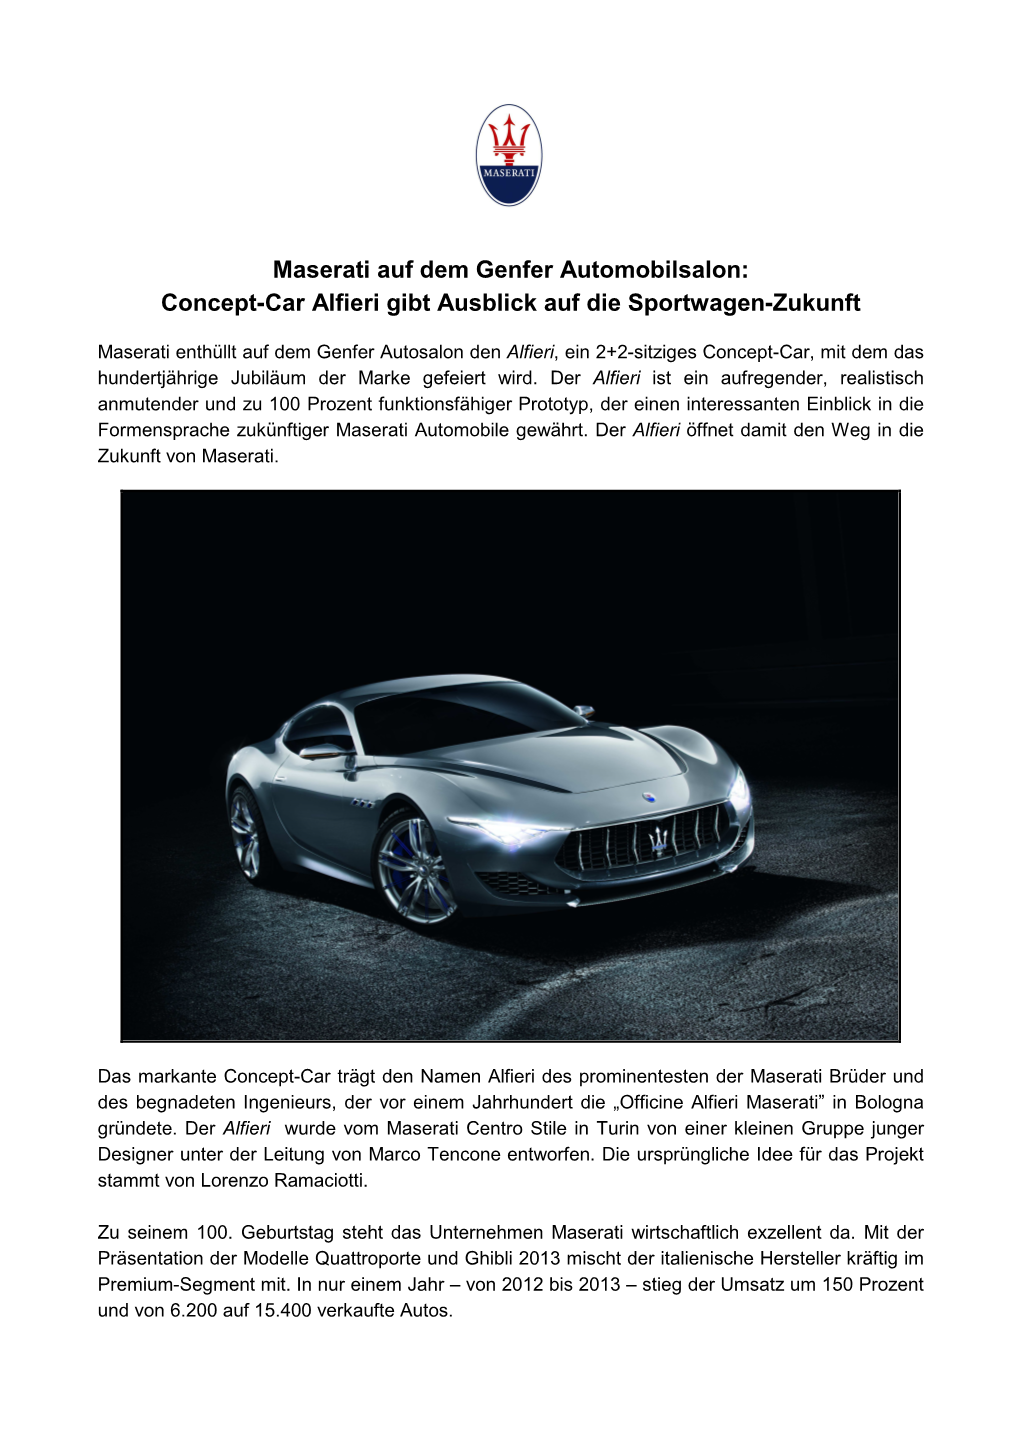 Maserati Auf Dem Genfer Automobilsalon: Concept-Car Alfieri Gibt Ausblick Auf Die Sportwagen-Zukunft